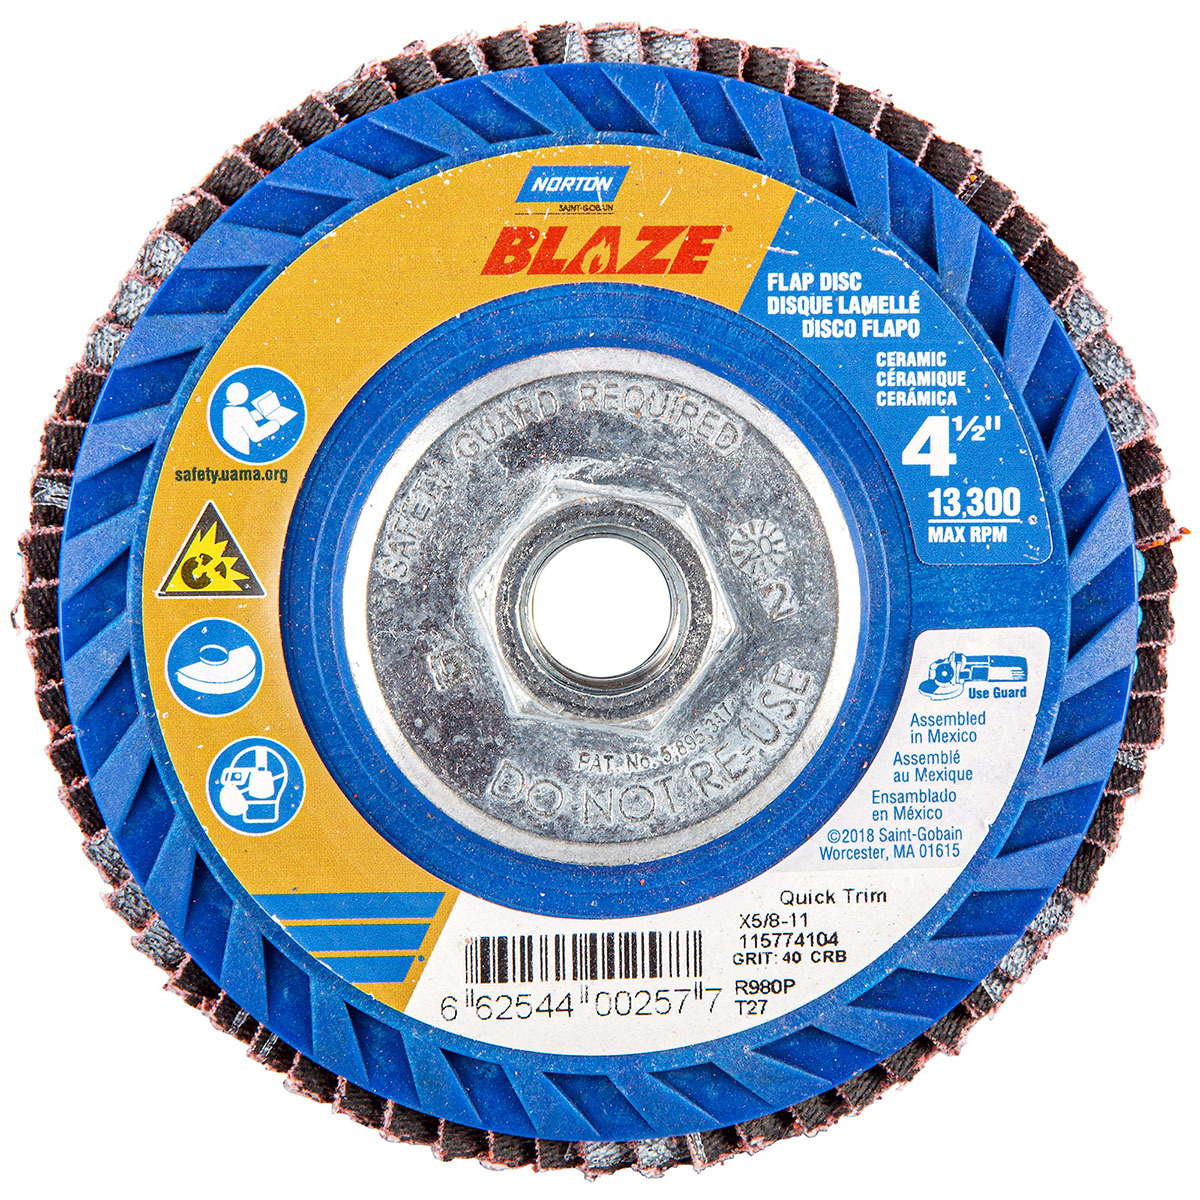 Aargo Heavy Duty 4 1/2 inch Velcro Clean & Strip Disc - 572028